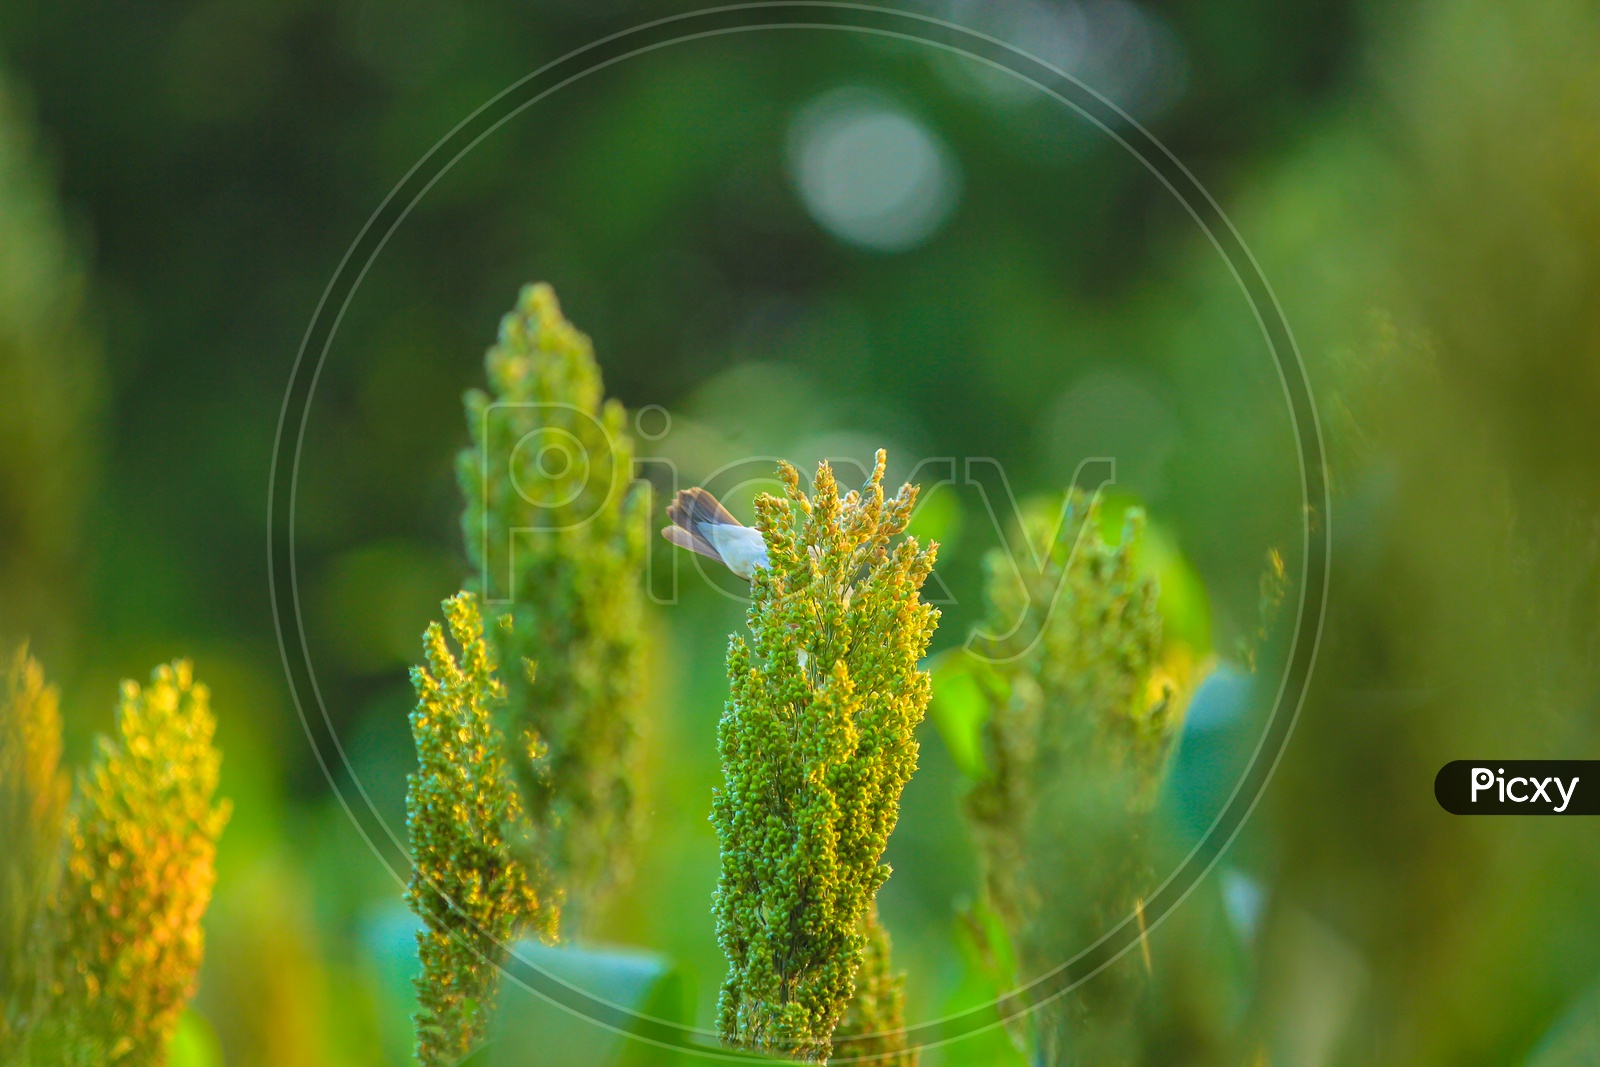 A Sparrow Eating Grains of Jowar in a Field Closeup Shot